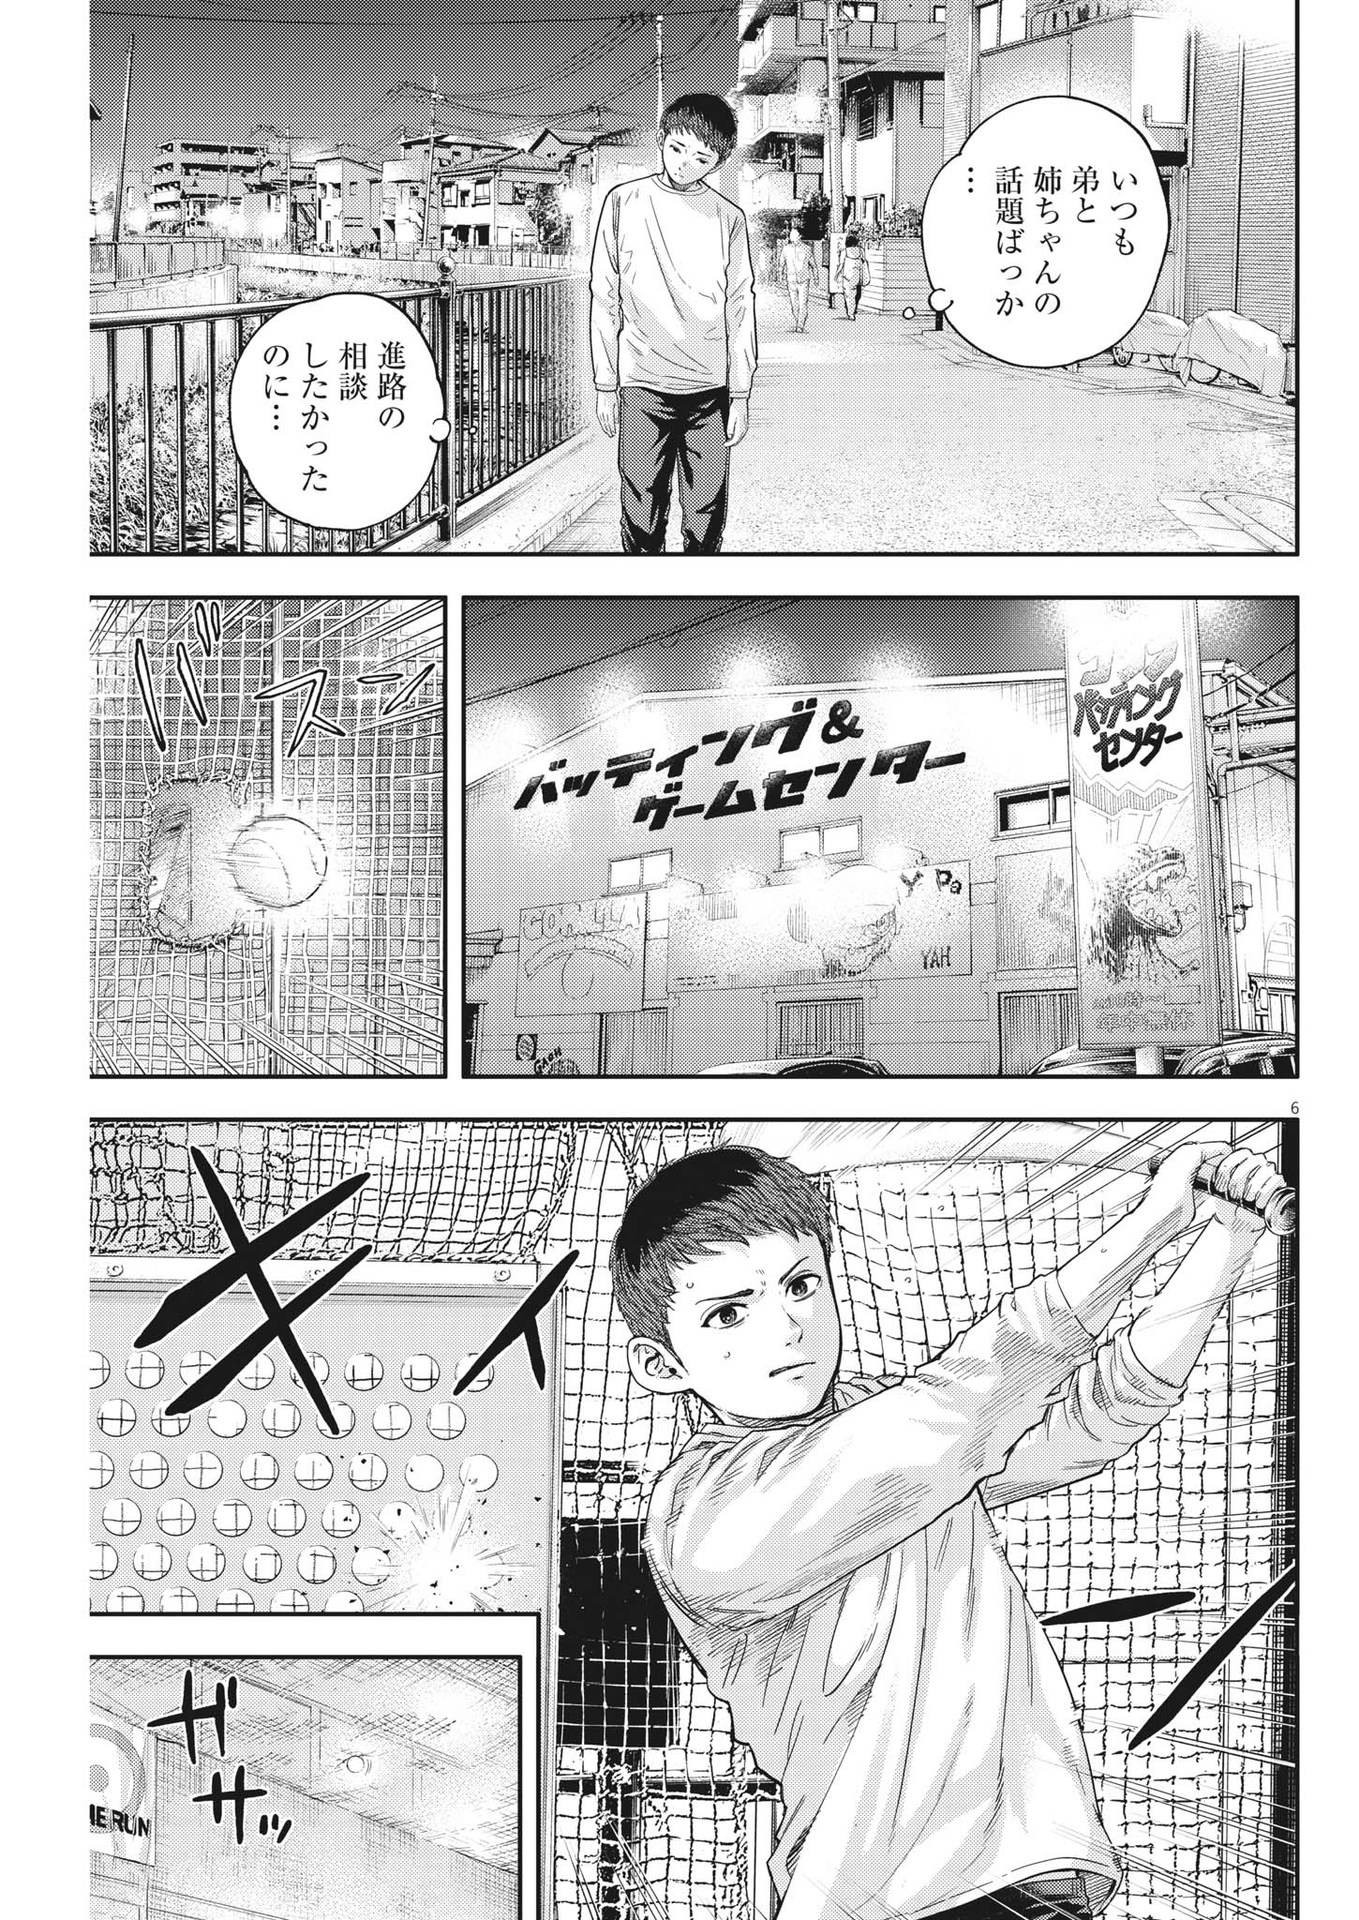 Yumenashi-sensei no Shinroshidou - Chapter 19 - Page 6